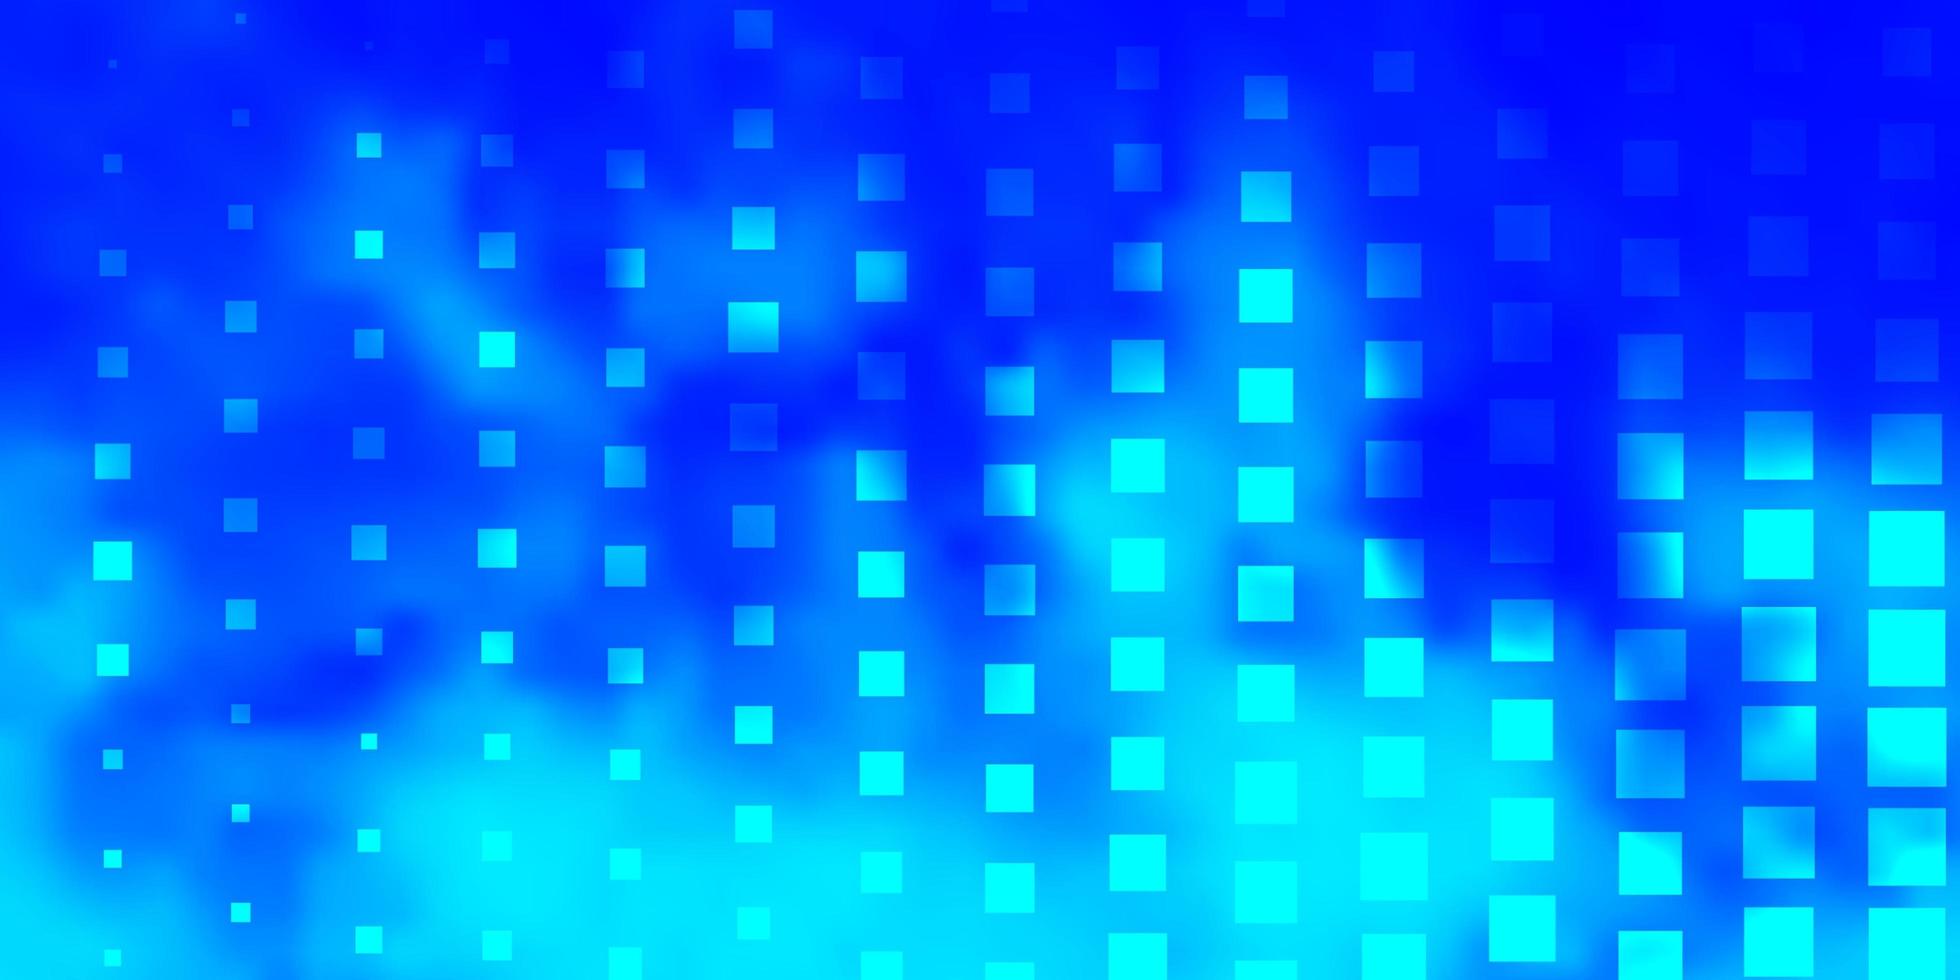 fundo vector azul claro com retângulos.